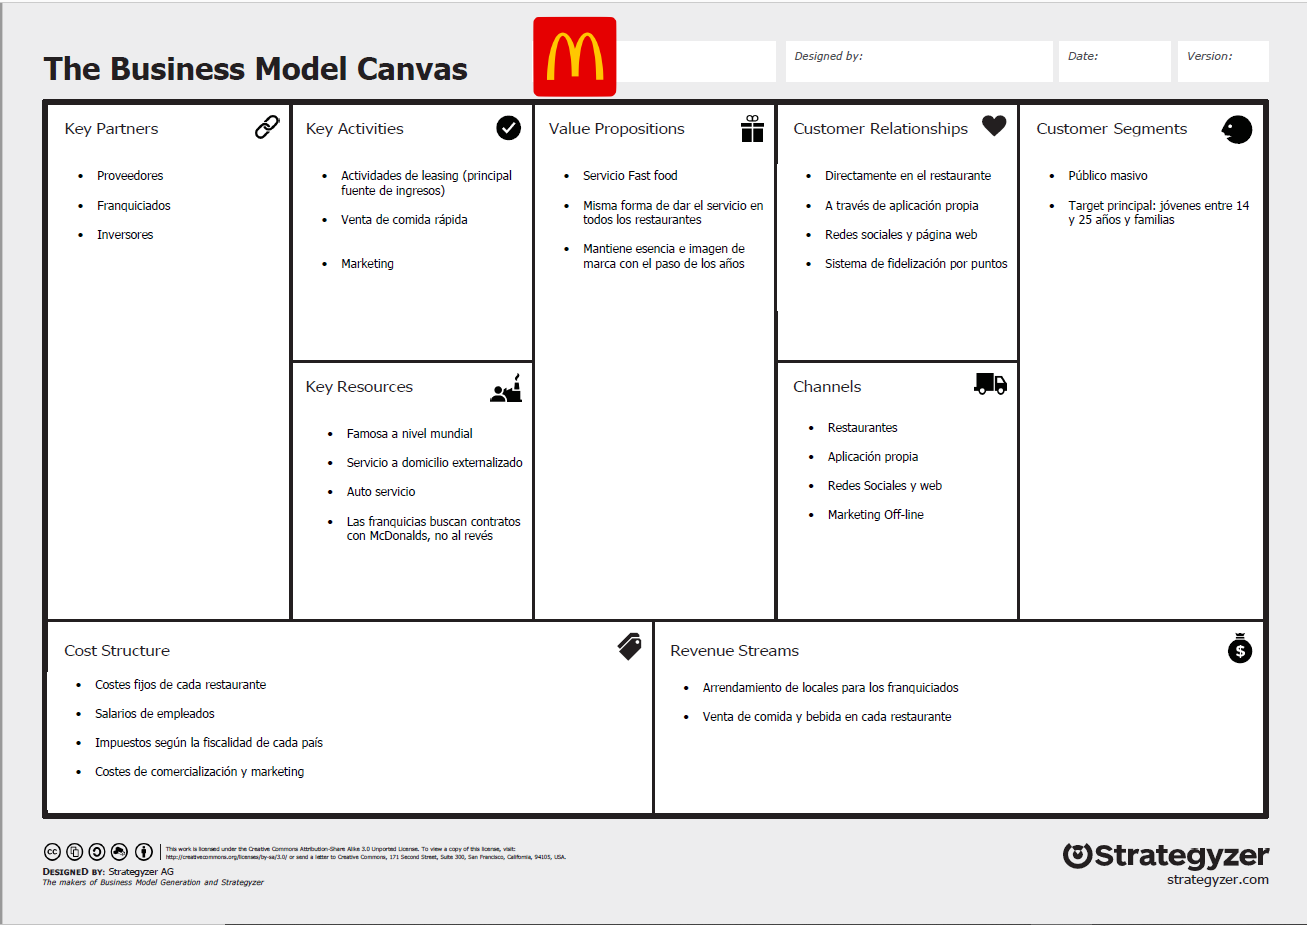 Modelo Canvas: qué es, para qué sirve, cómo se usa y ejemplos